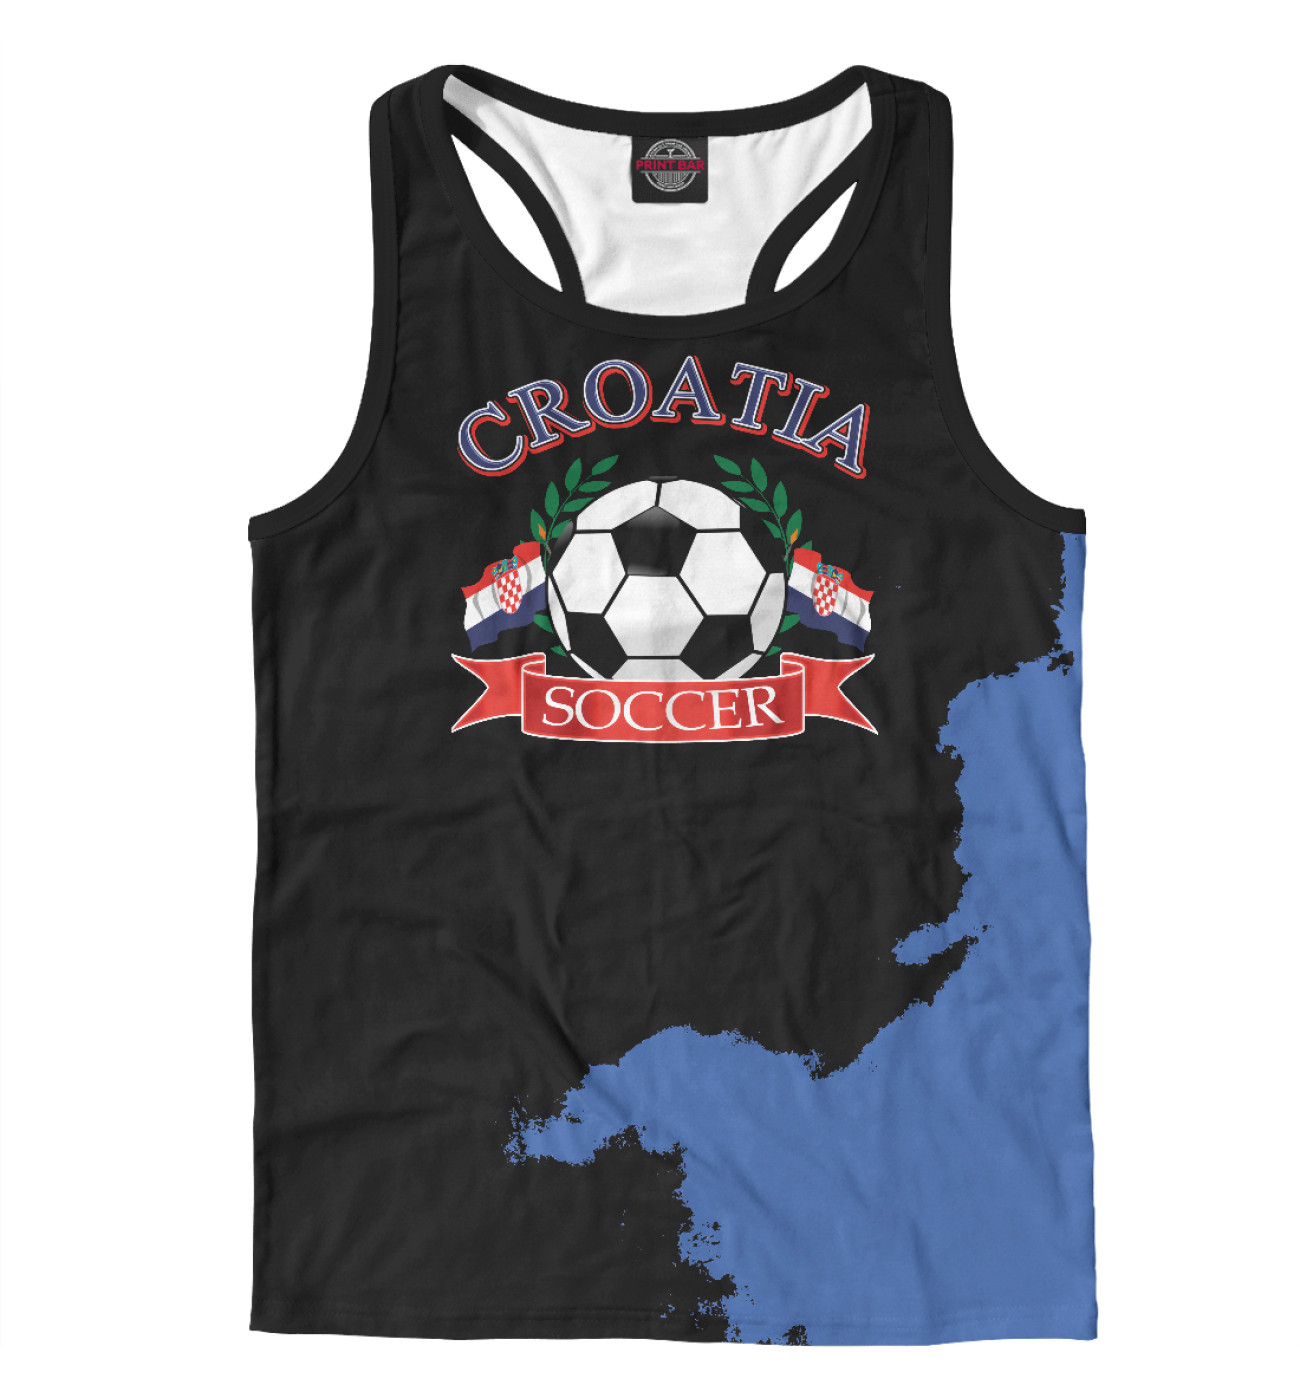 Мужская Борцовка Croatia soccer ball, артикул: FTO-670002-mayb-2